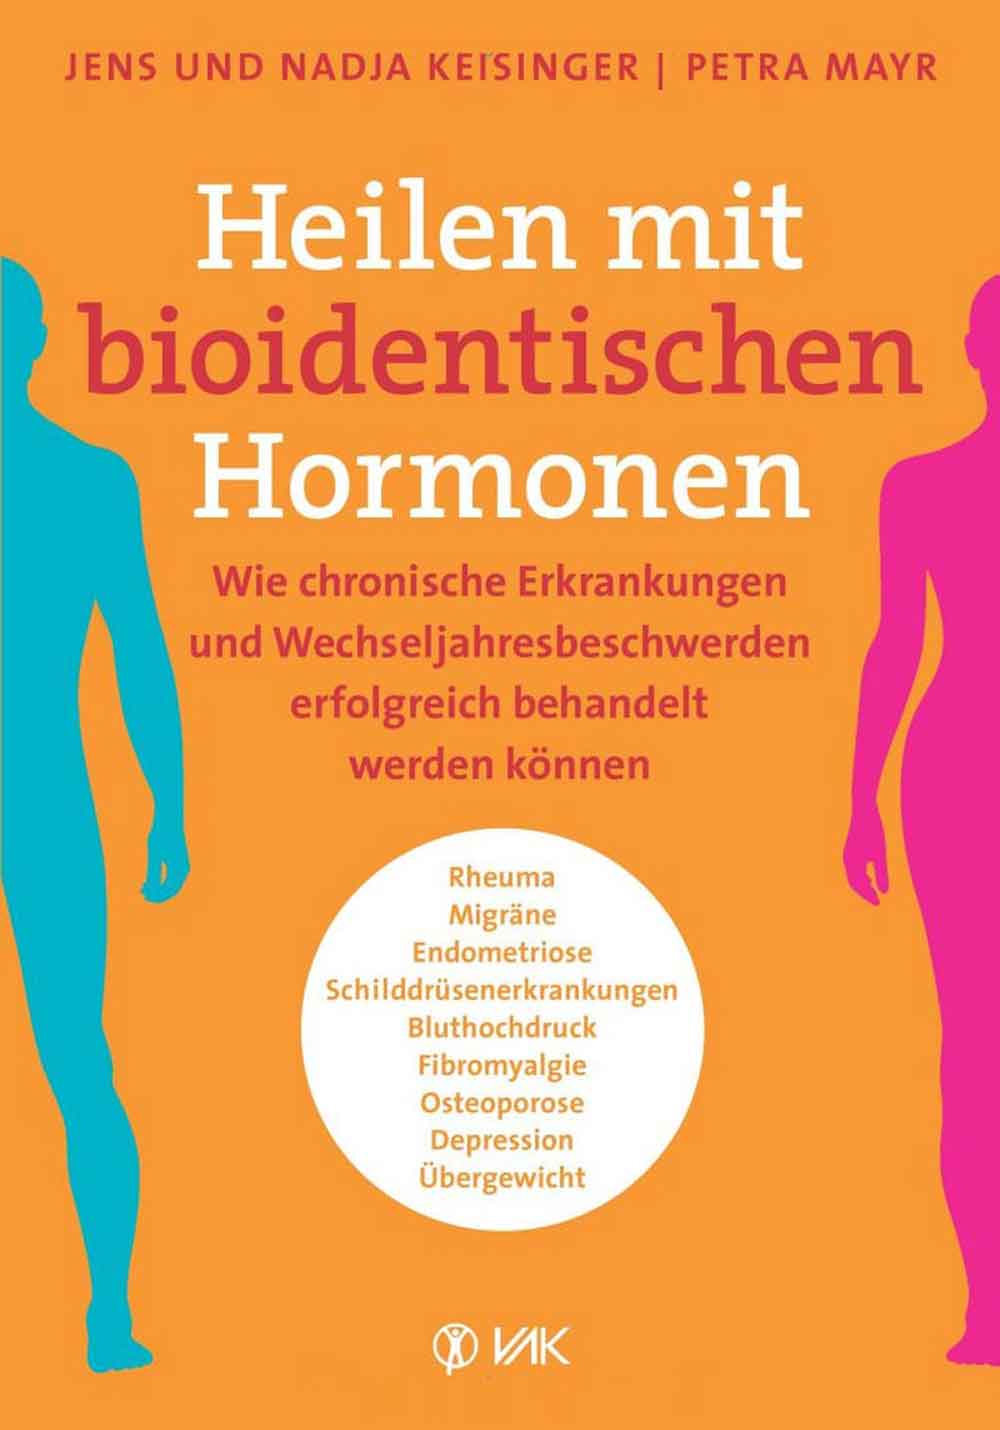 Lesetipps für Gütersloh, Jens und Nadja Keisinger, Petra Mayr, »Heilen mit bioidentischen Hormonen«